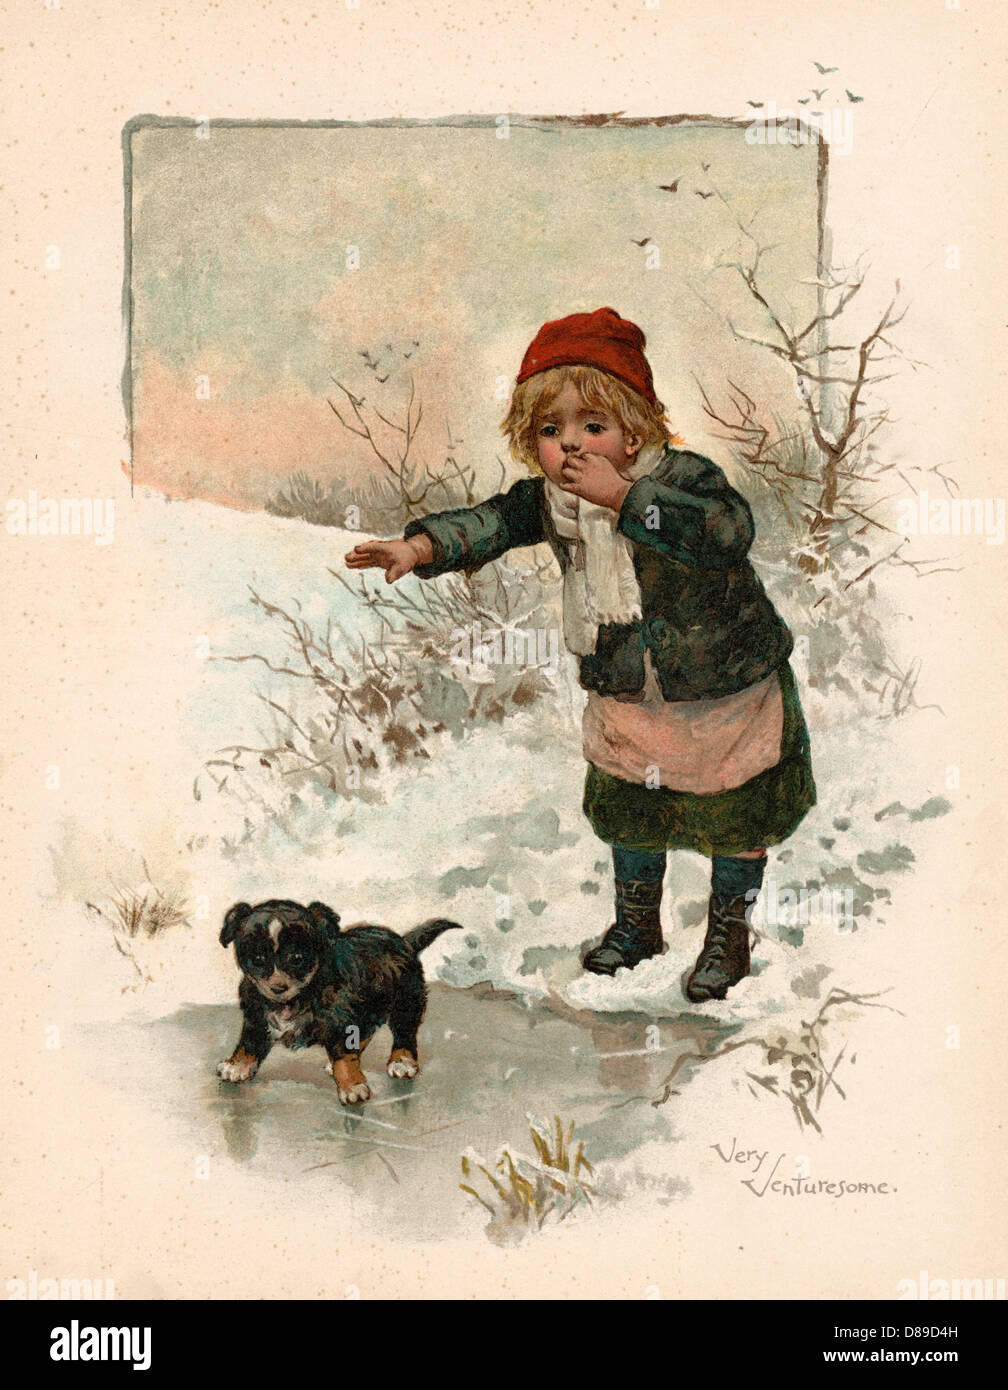 GIRL/DOG ON THIN ICE Stock Photo